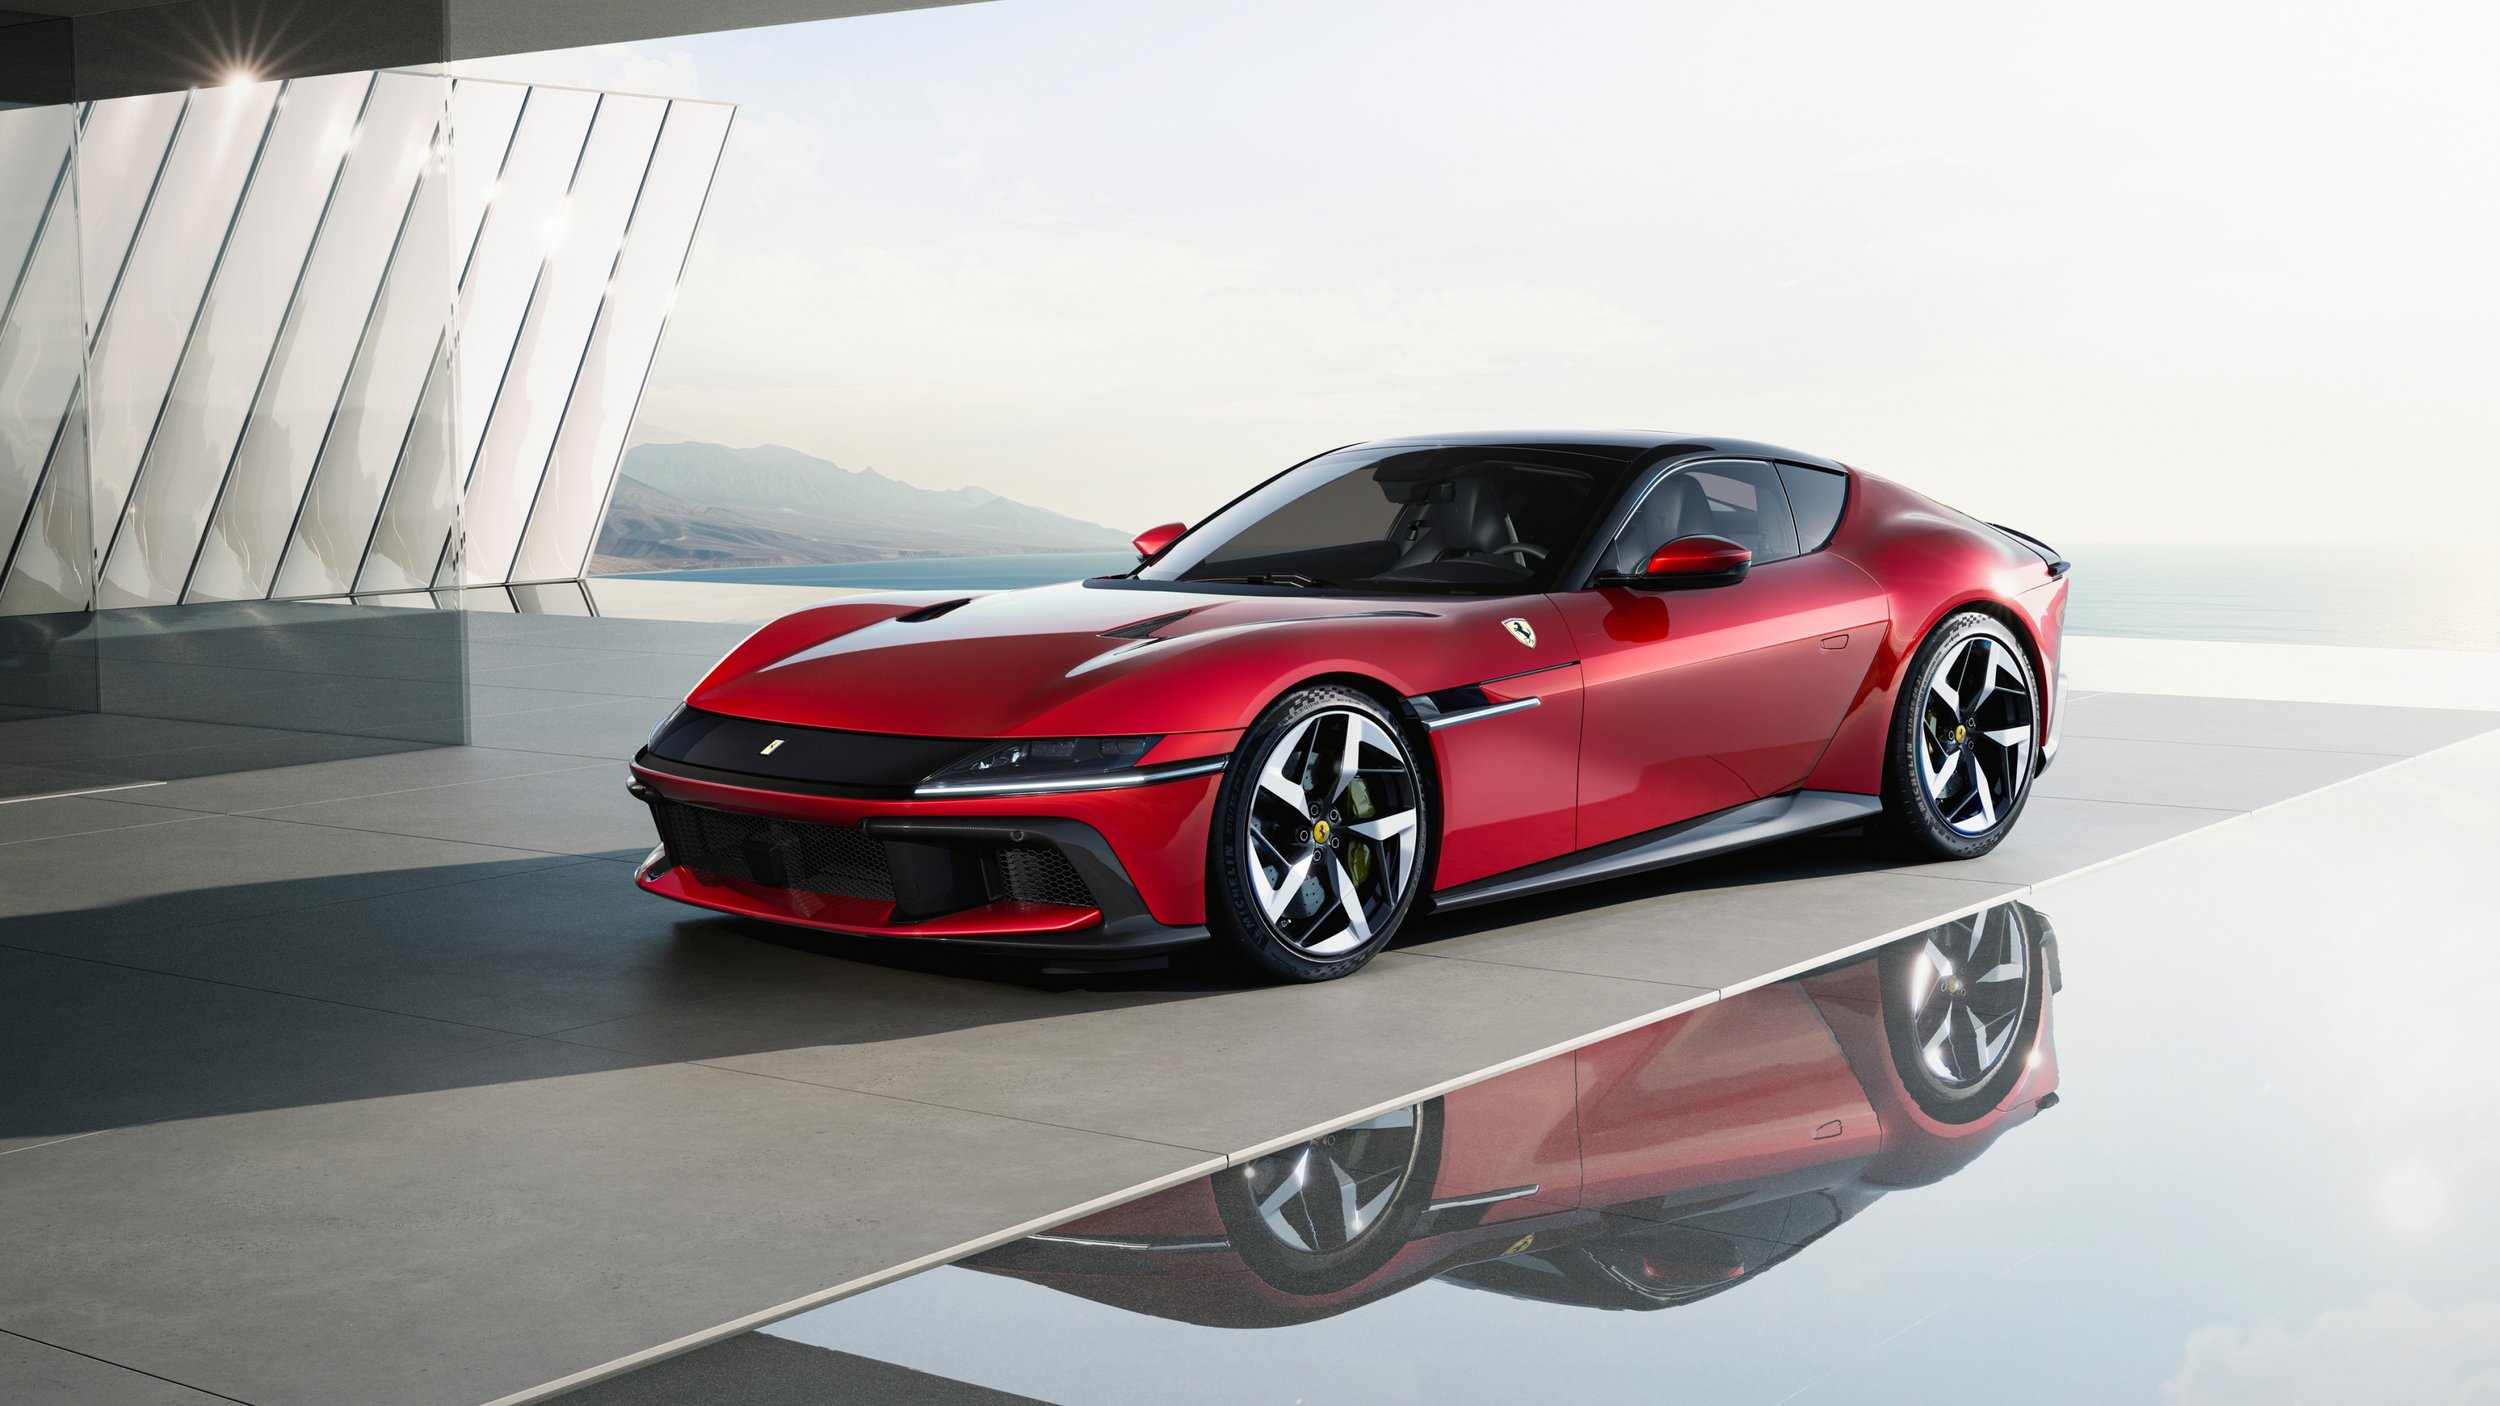 New_Ferrari_V12_ext_06_Design_red_media.jpg